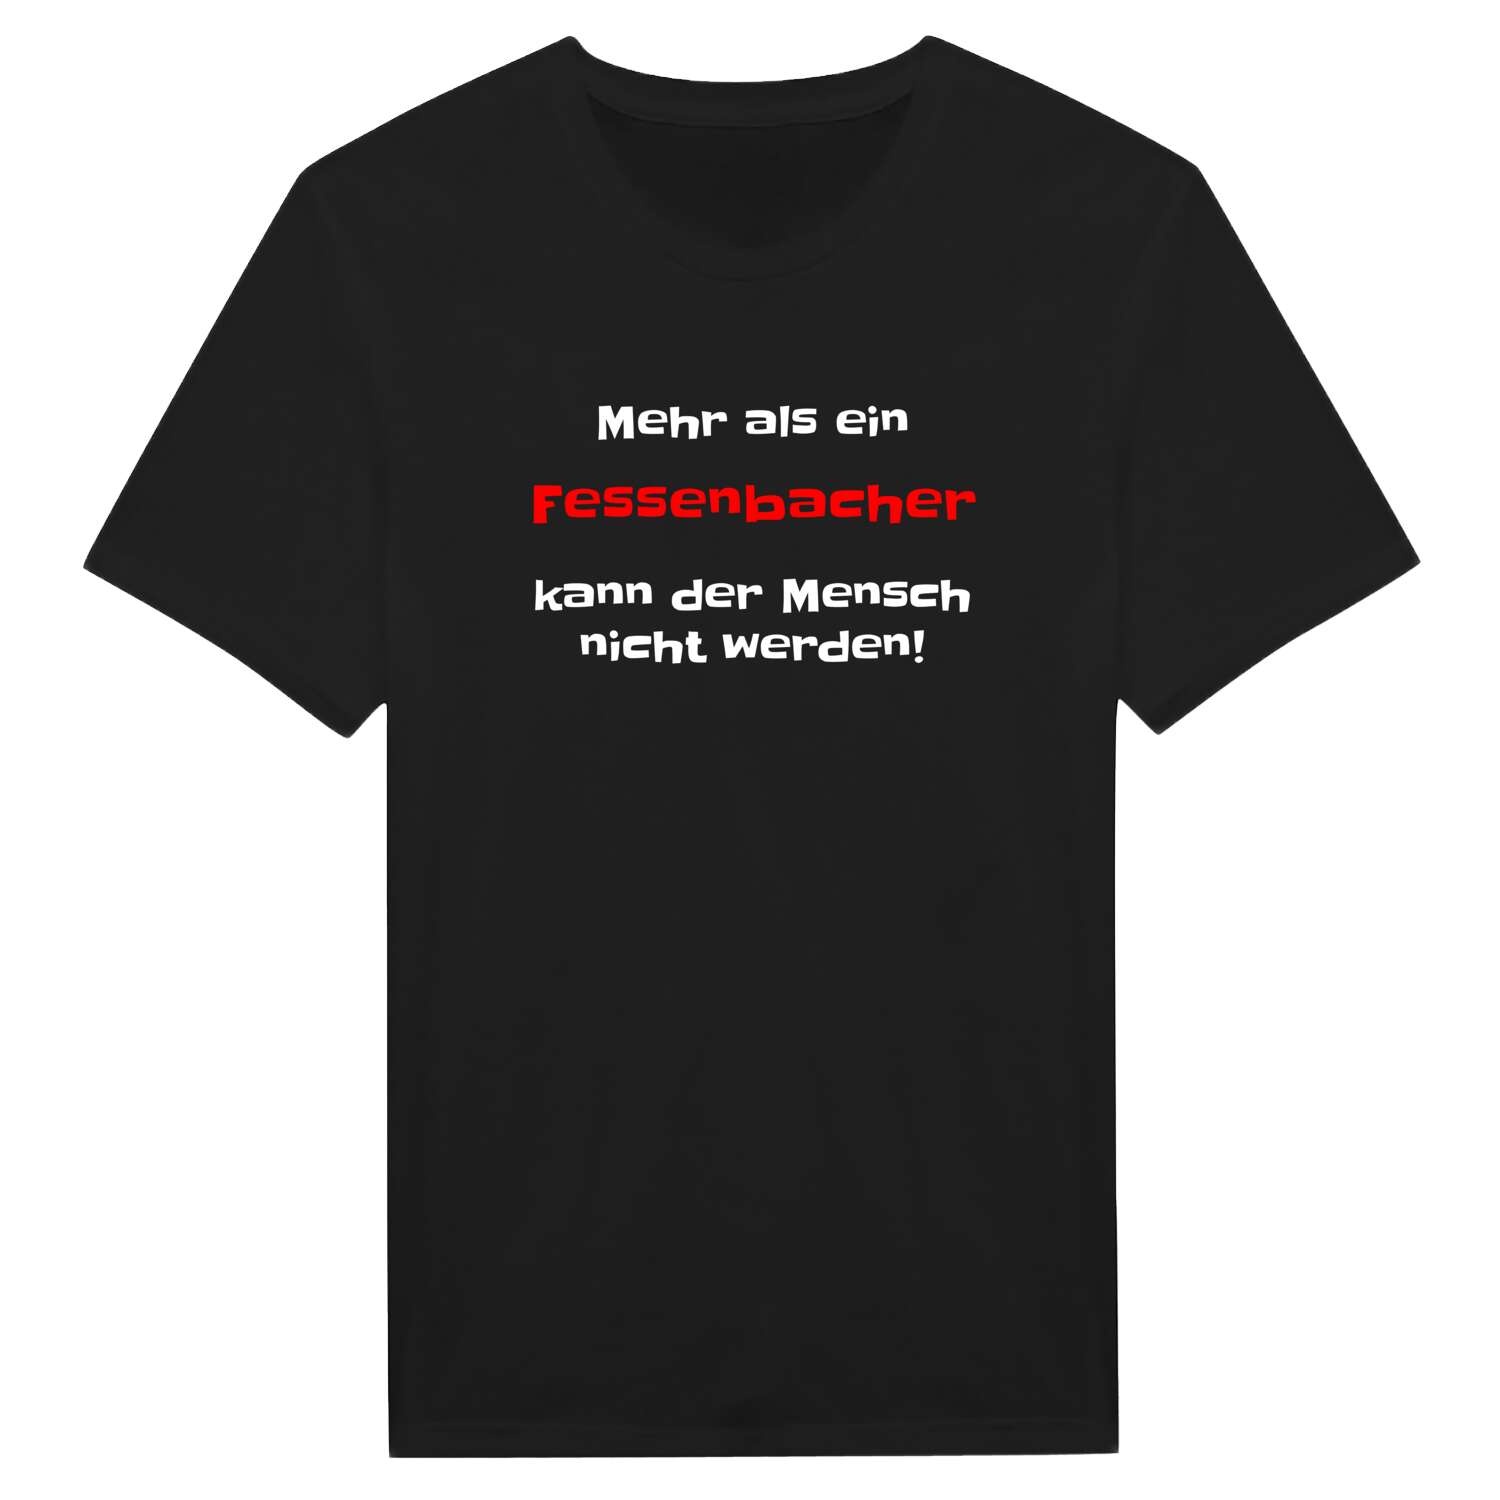 Fessenbach T-Shirt »Mehr als ein«